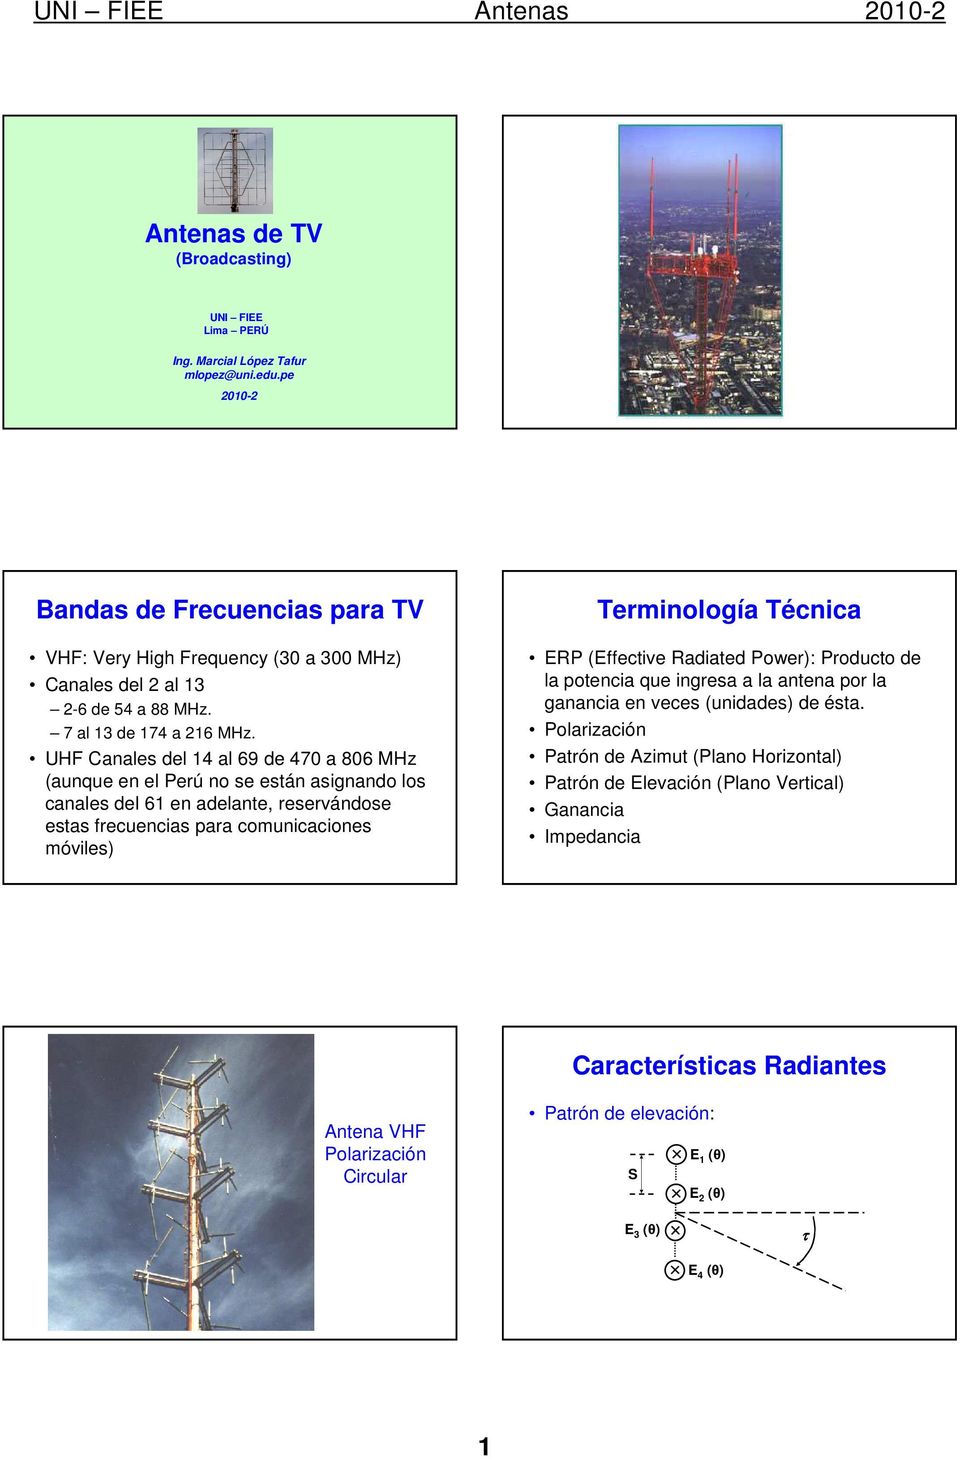 UHF Canales del 1 al 69 de 70 a 806 MHz (aunque en el Perú no se están asignando los canales del 61 en adelante, reservándose estas frecuencias para comunicaciones móviles) Terminología